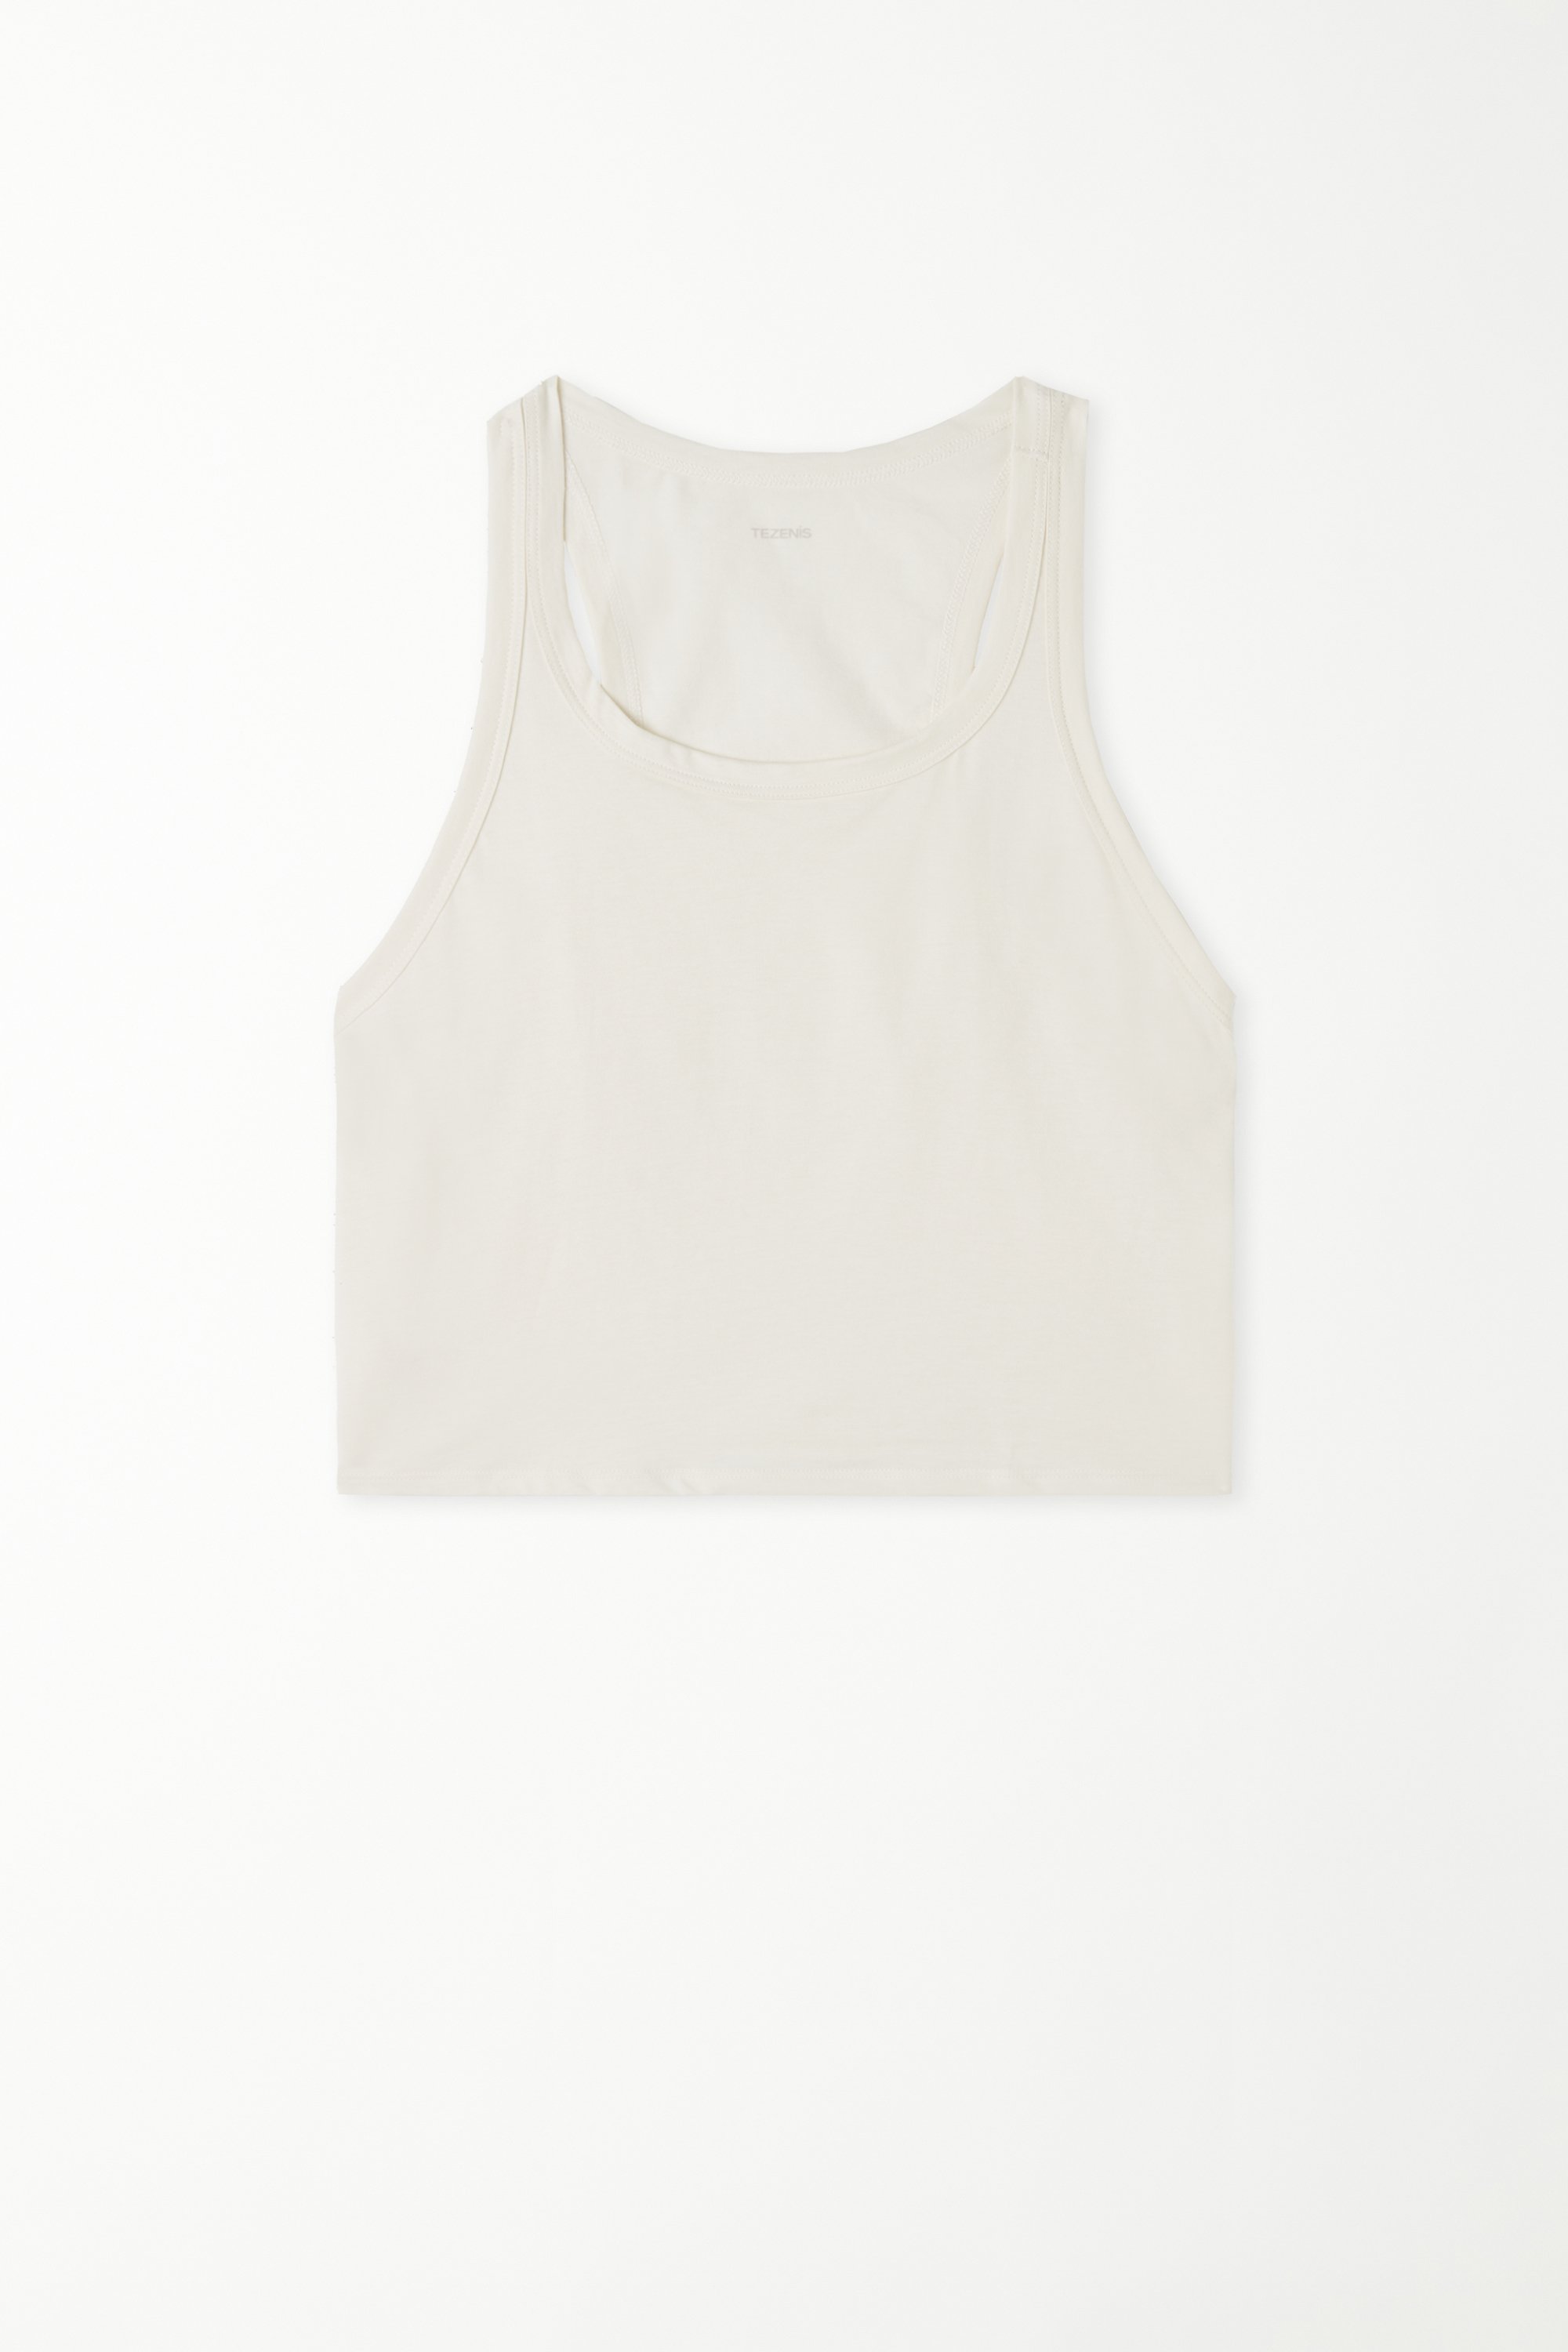 Short Cotton Vest Top with Wide Shoulder Straps